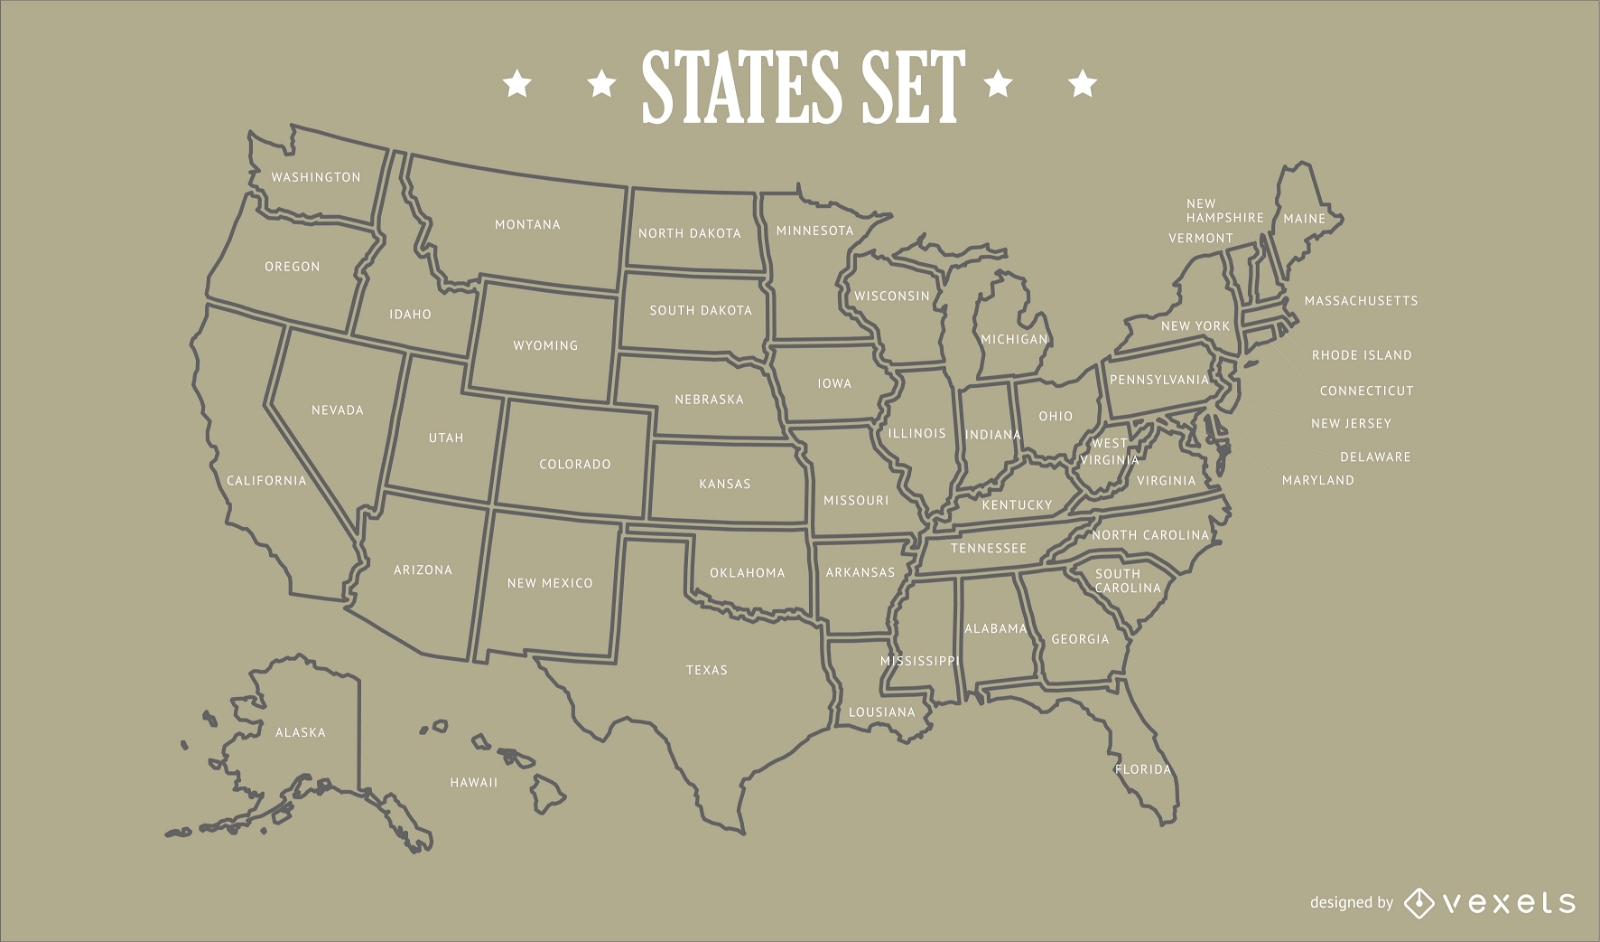 Design do mapa dos estados dos EUA